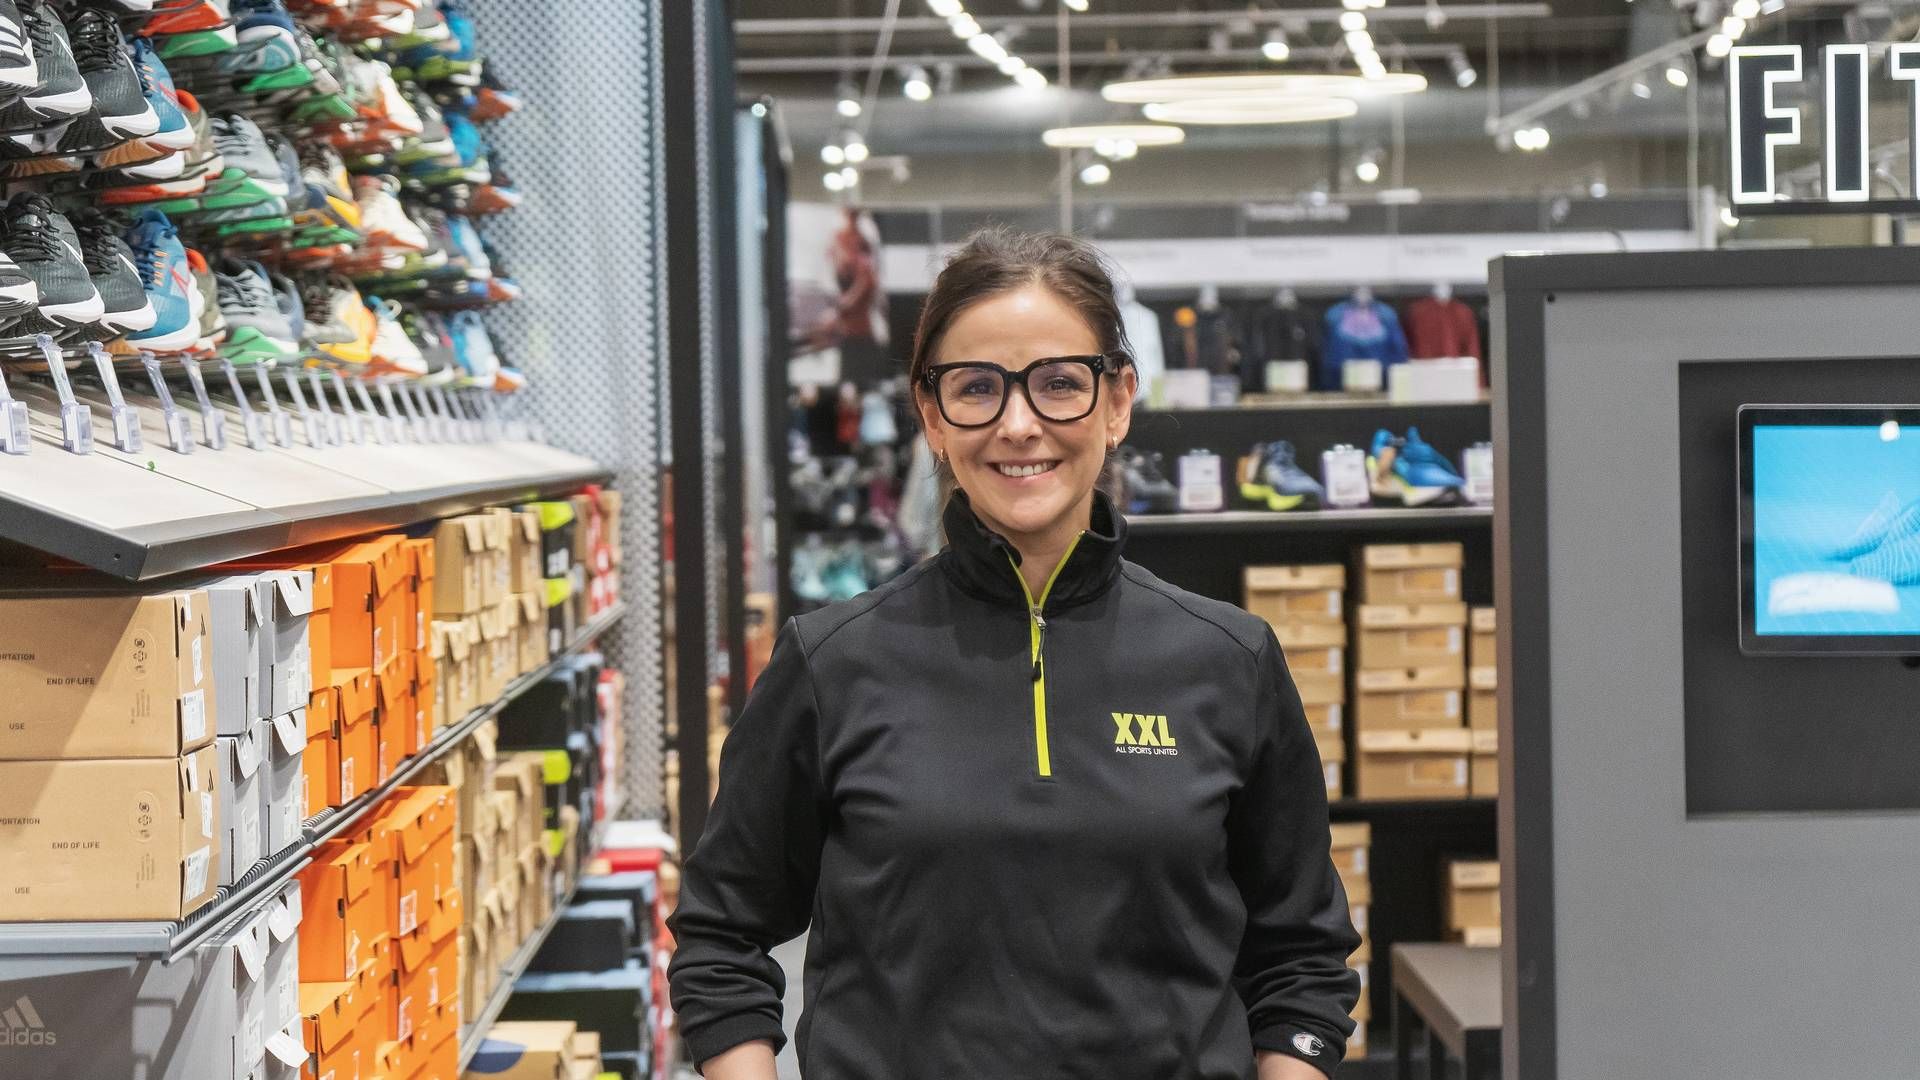 Cristina Moreno var med til at åbne XXL's første butik i Oslo i 2001. Nu – 12 år efter – bliver hun om få måneder landechef for XXL Norge. | Foto: XXL/Pr